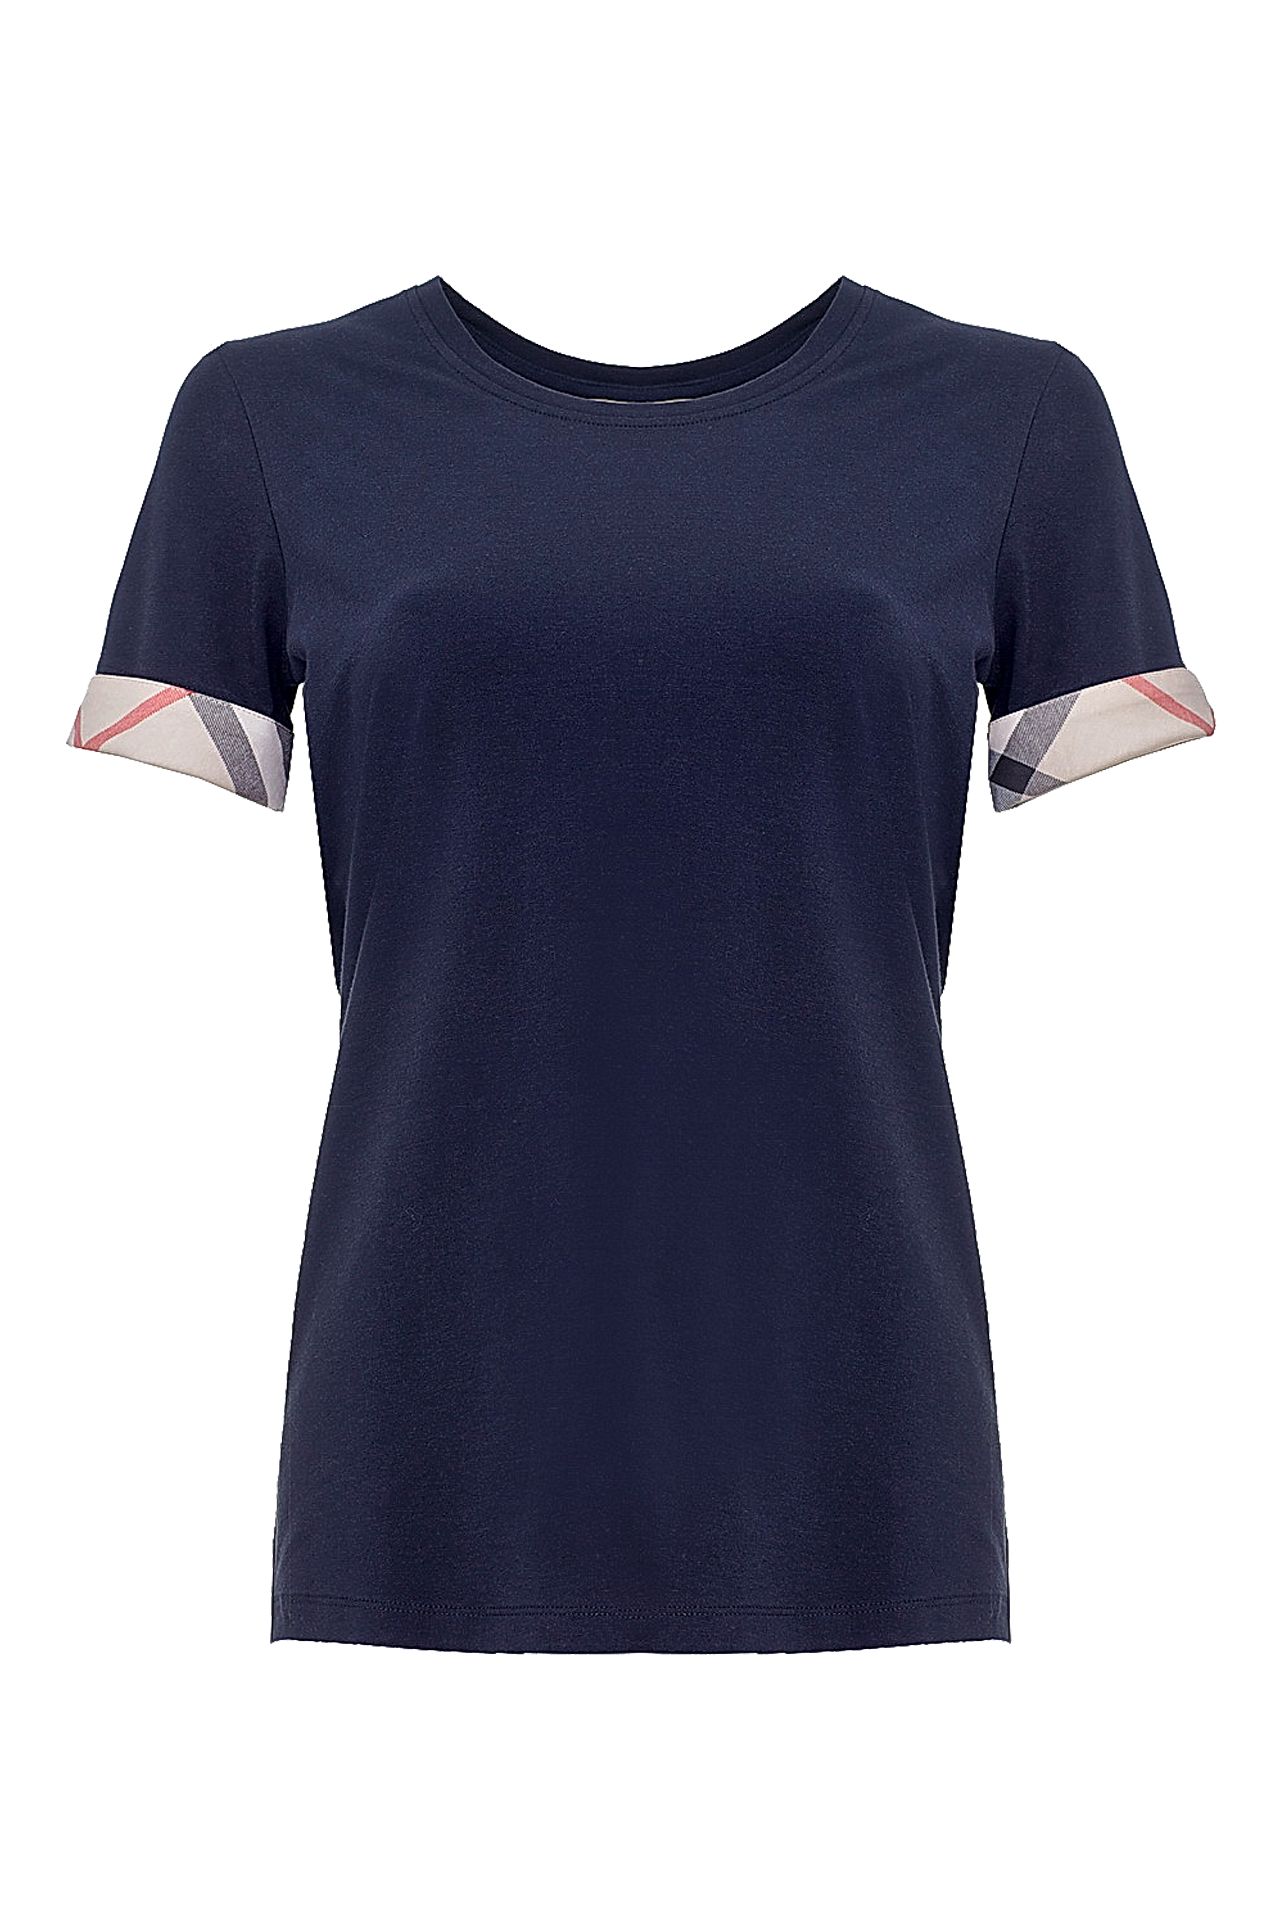 Одежда женская Футболка BURBERRY (3877319/14.3). Купить за 7500 руб.